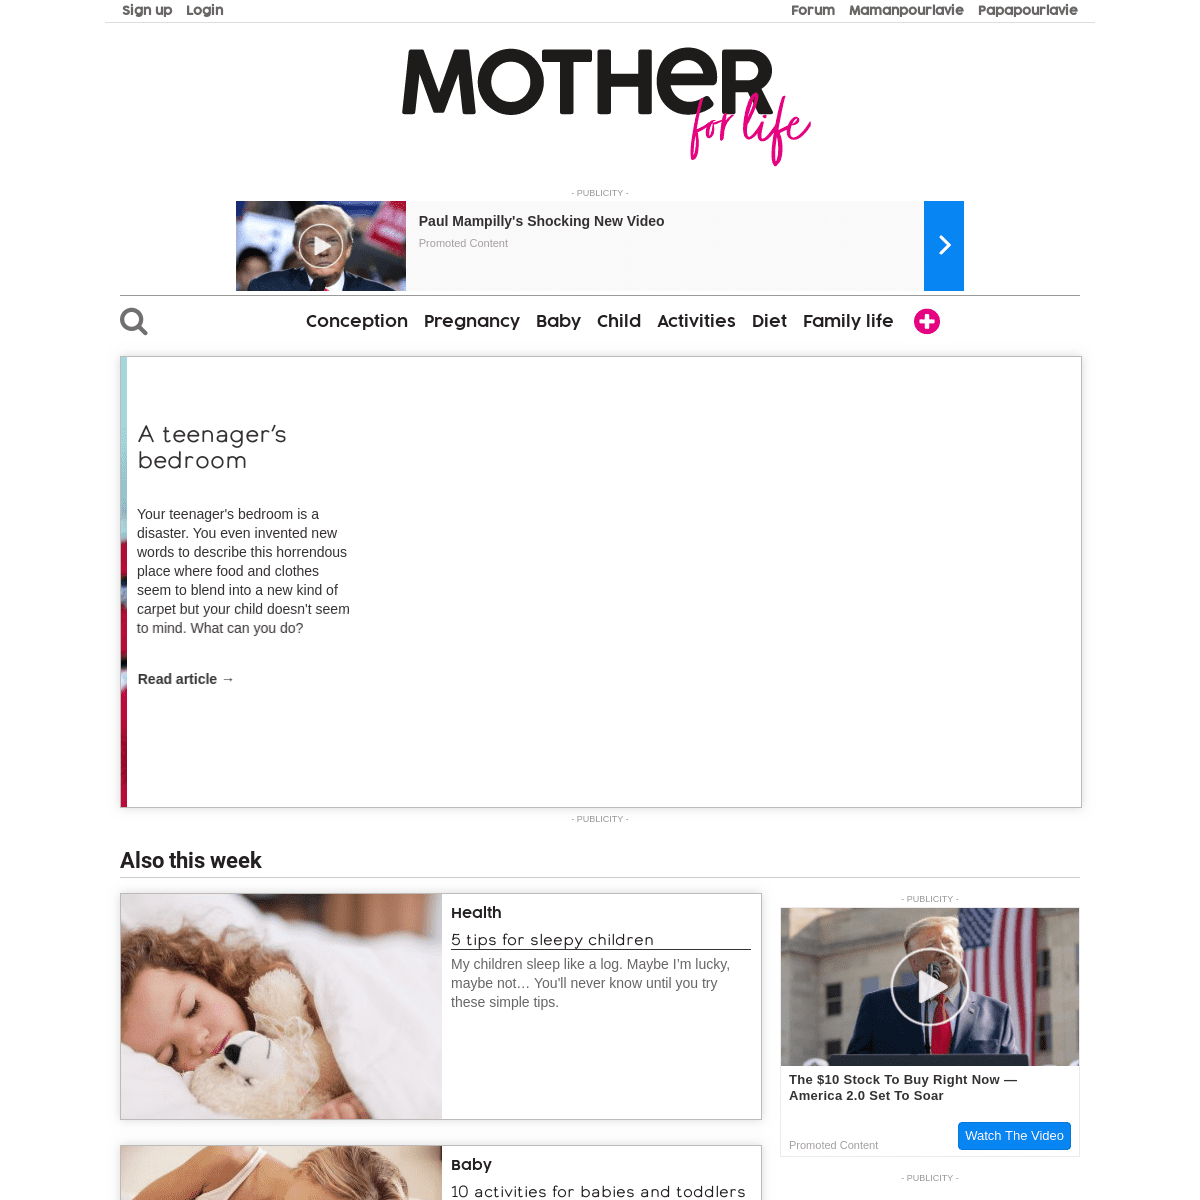 A complete backup of motherforlife.com